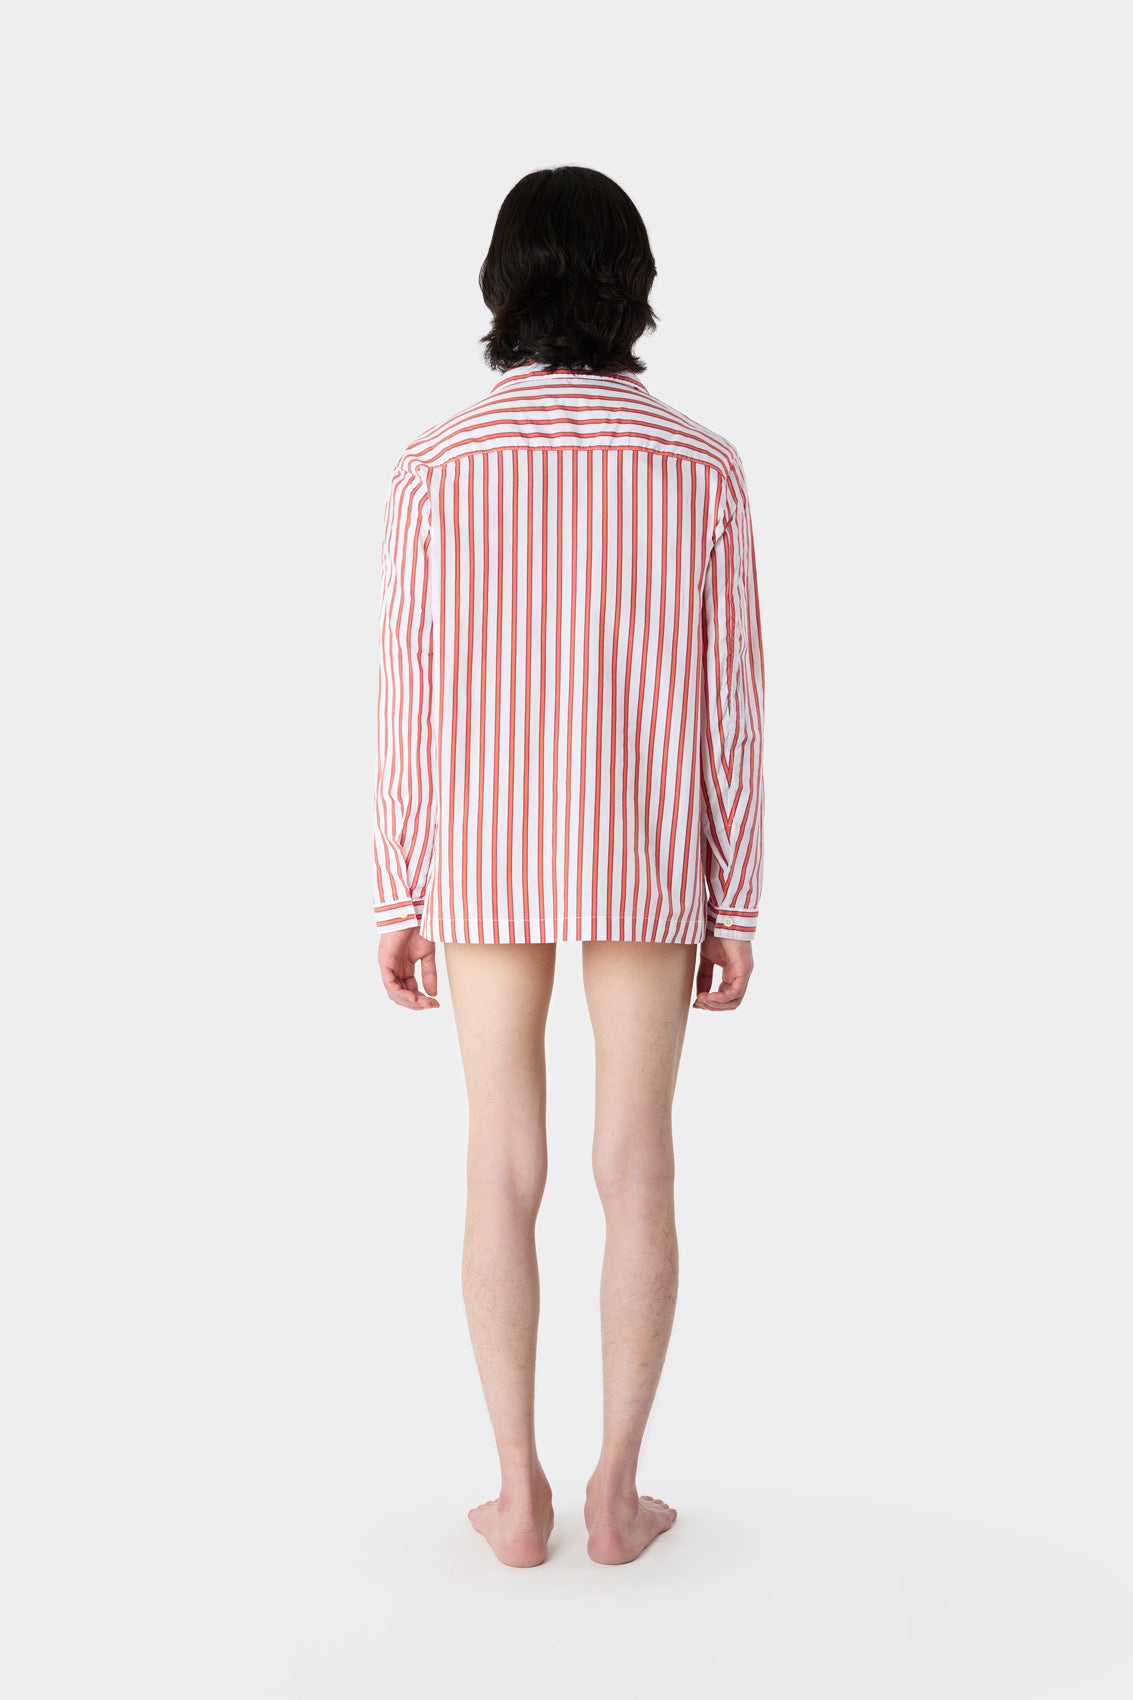 SHIRT / cream & red stripes